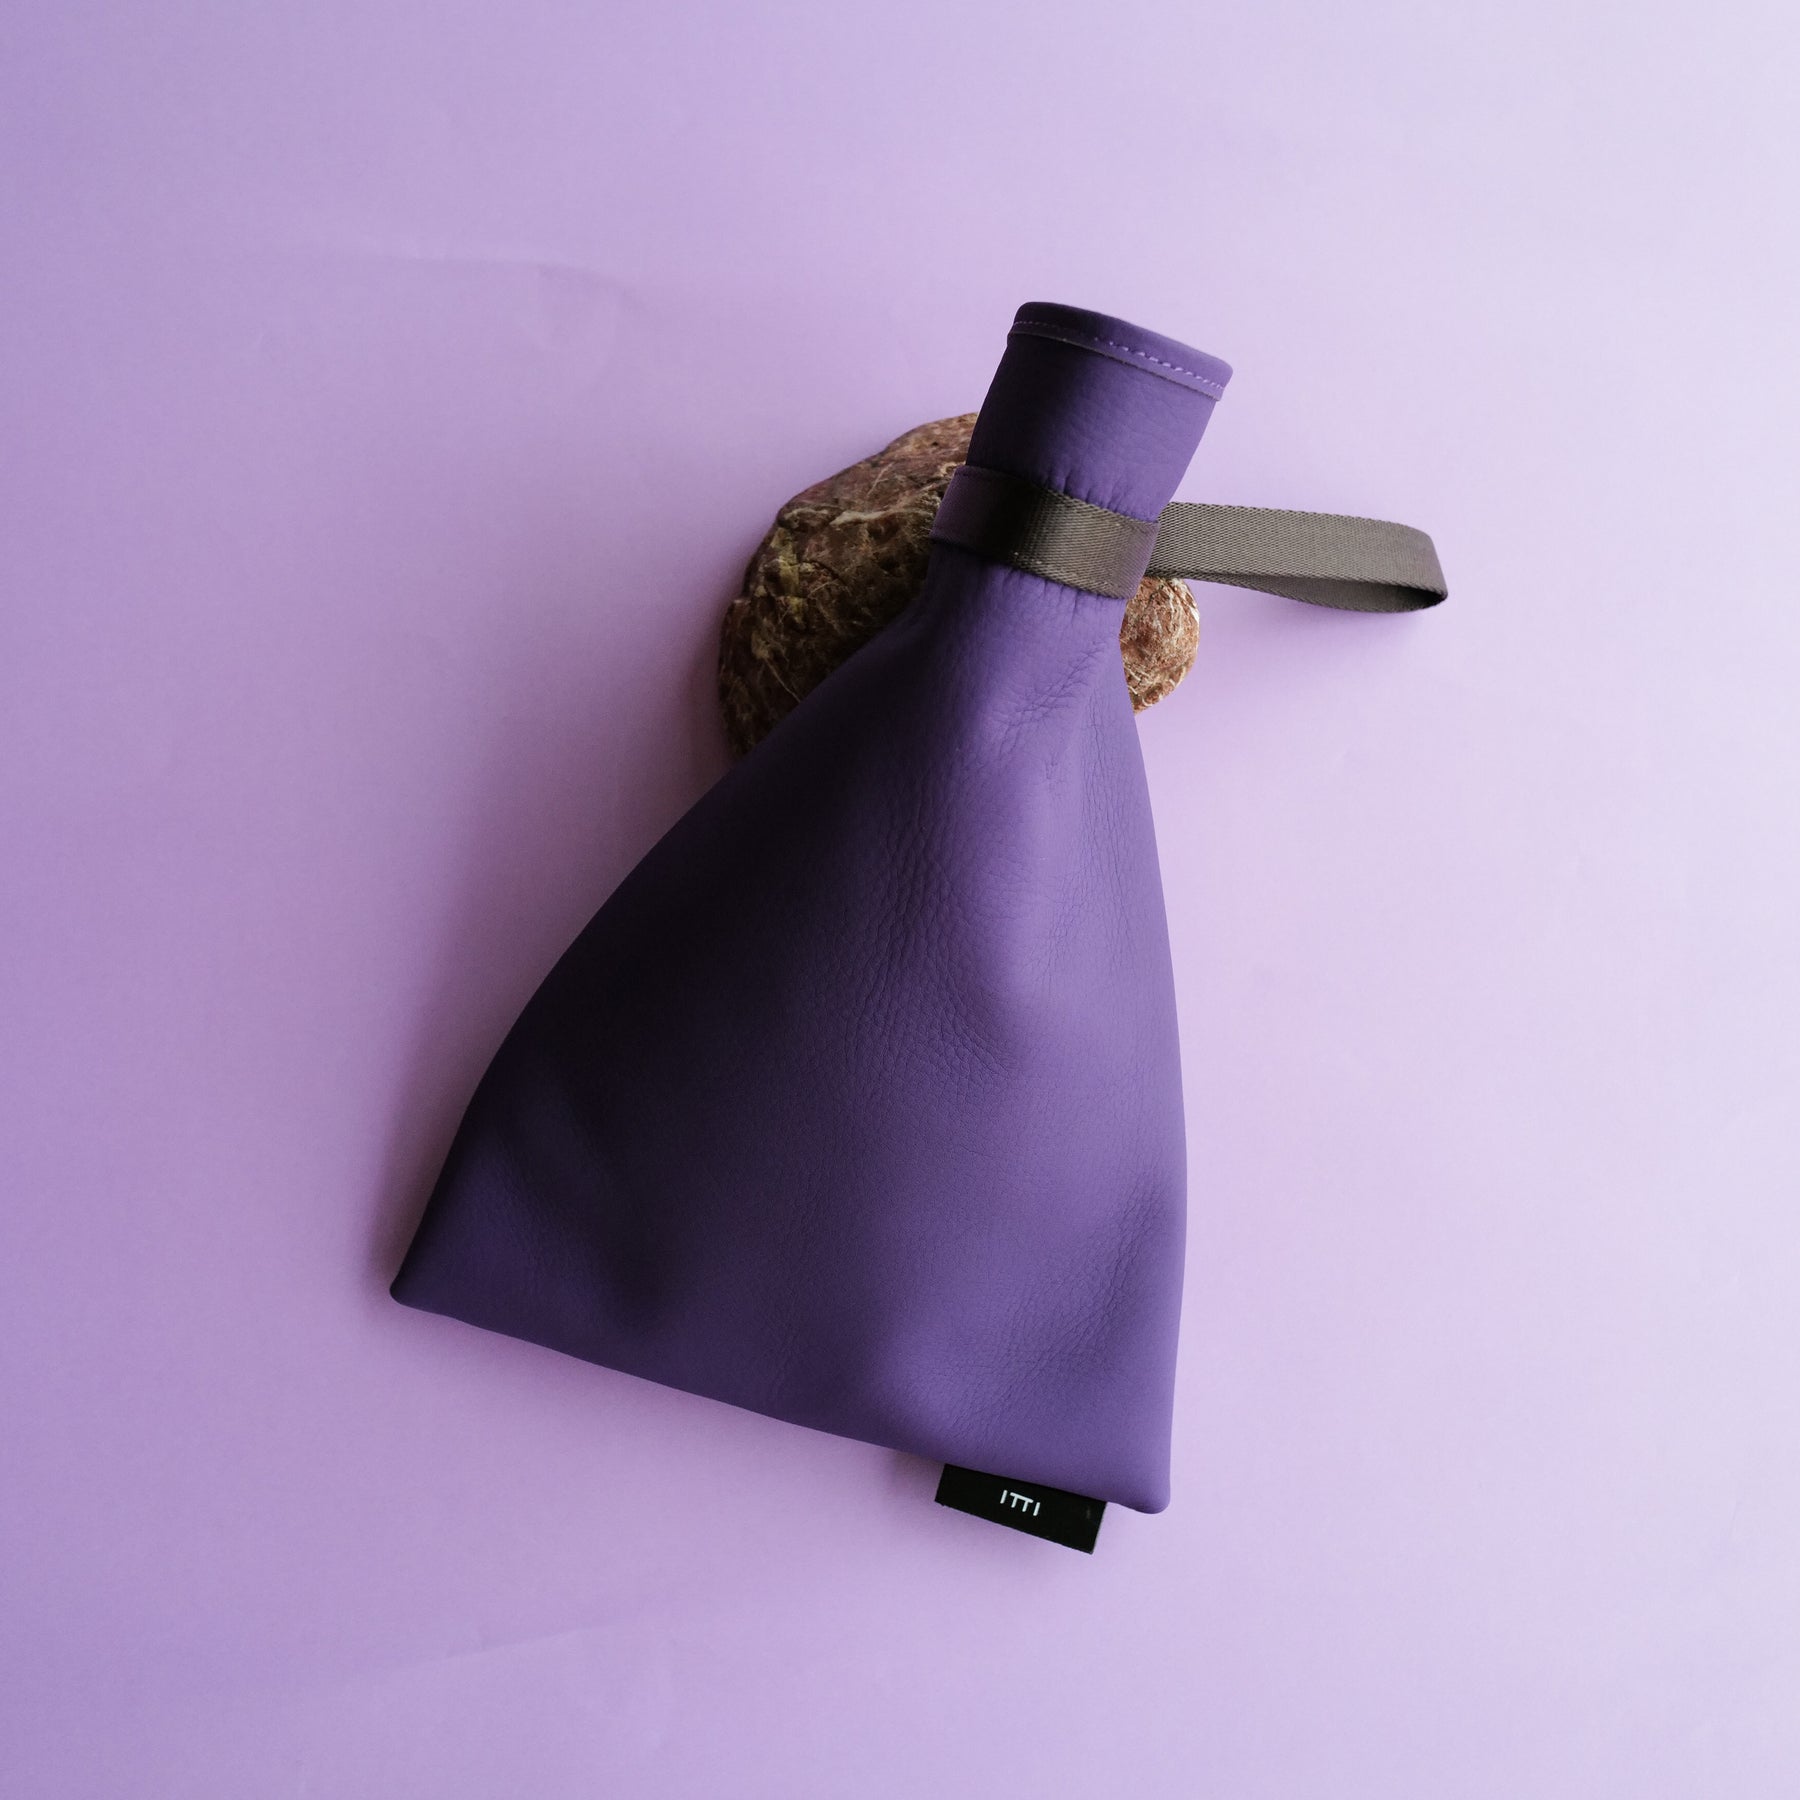 ANNIE RICE BAGiii / PPL COLLECTION【LIMITED】(アニーライスバッグ / パープルコレクション) - ITTI (イッチ) 紫 なす ナス 巾着 ハンドバッグ 鞄 かばん カバン ポーチ レザー 皮革 メンズ レディース ユニセックス